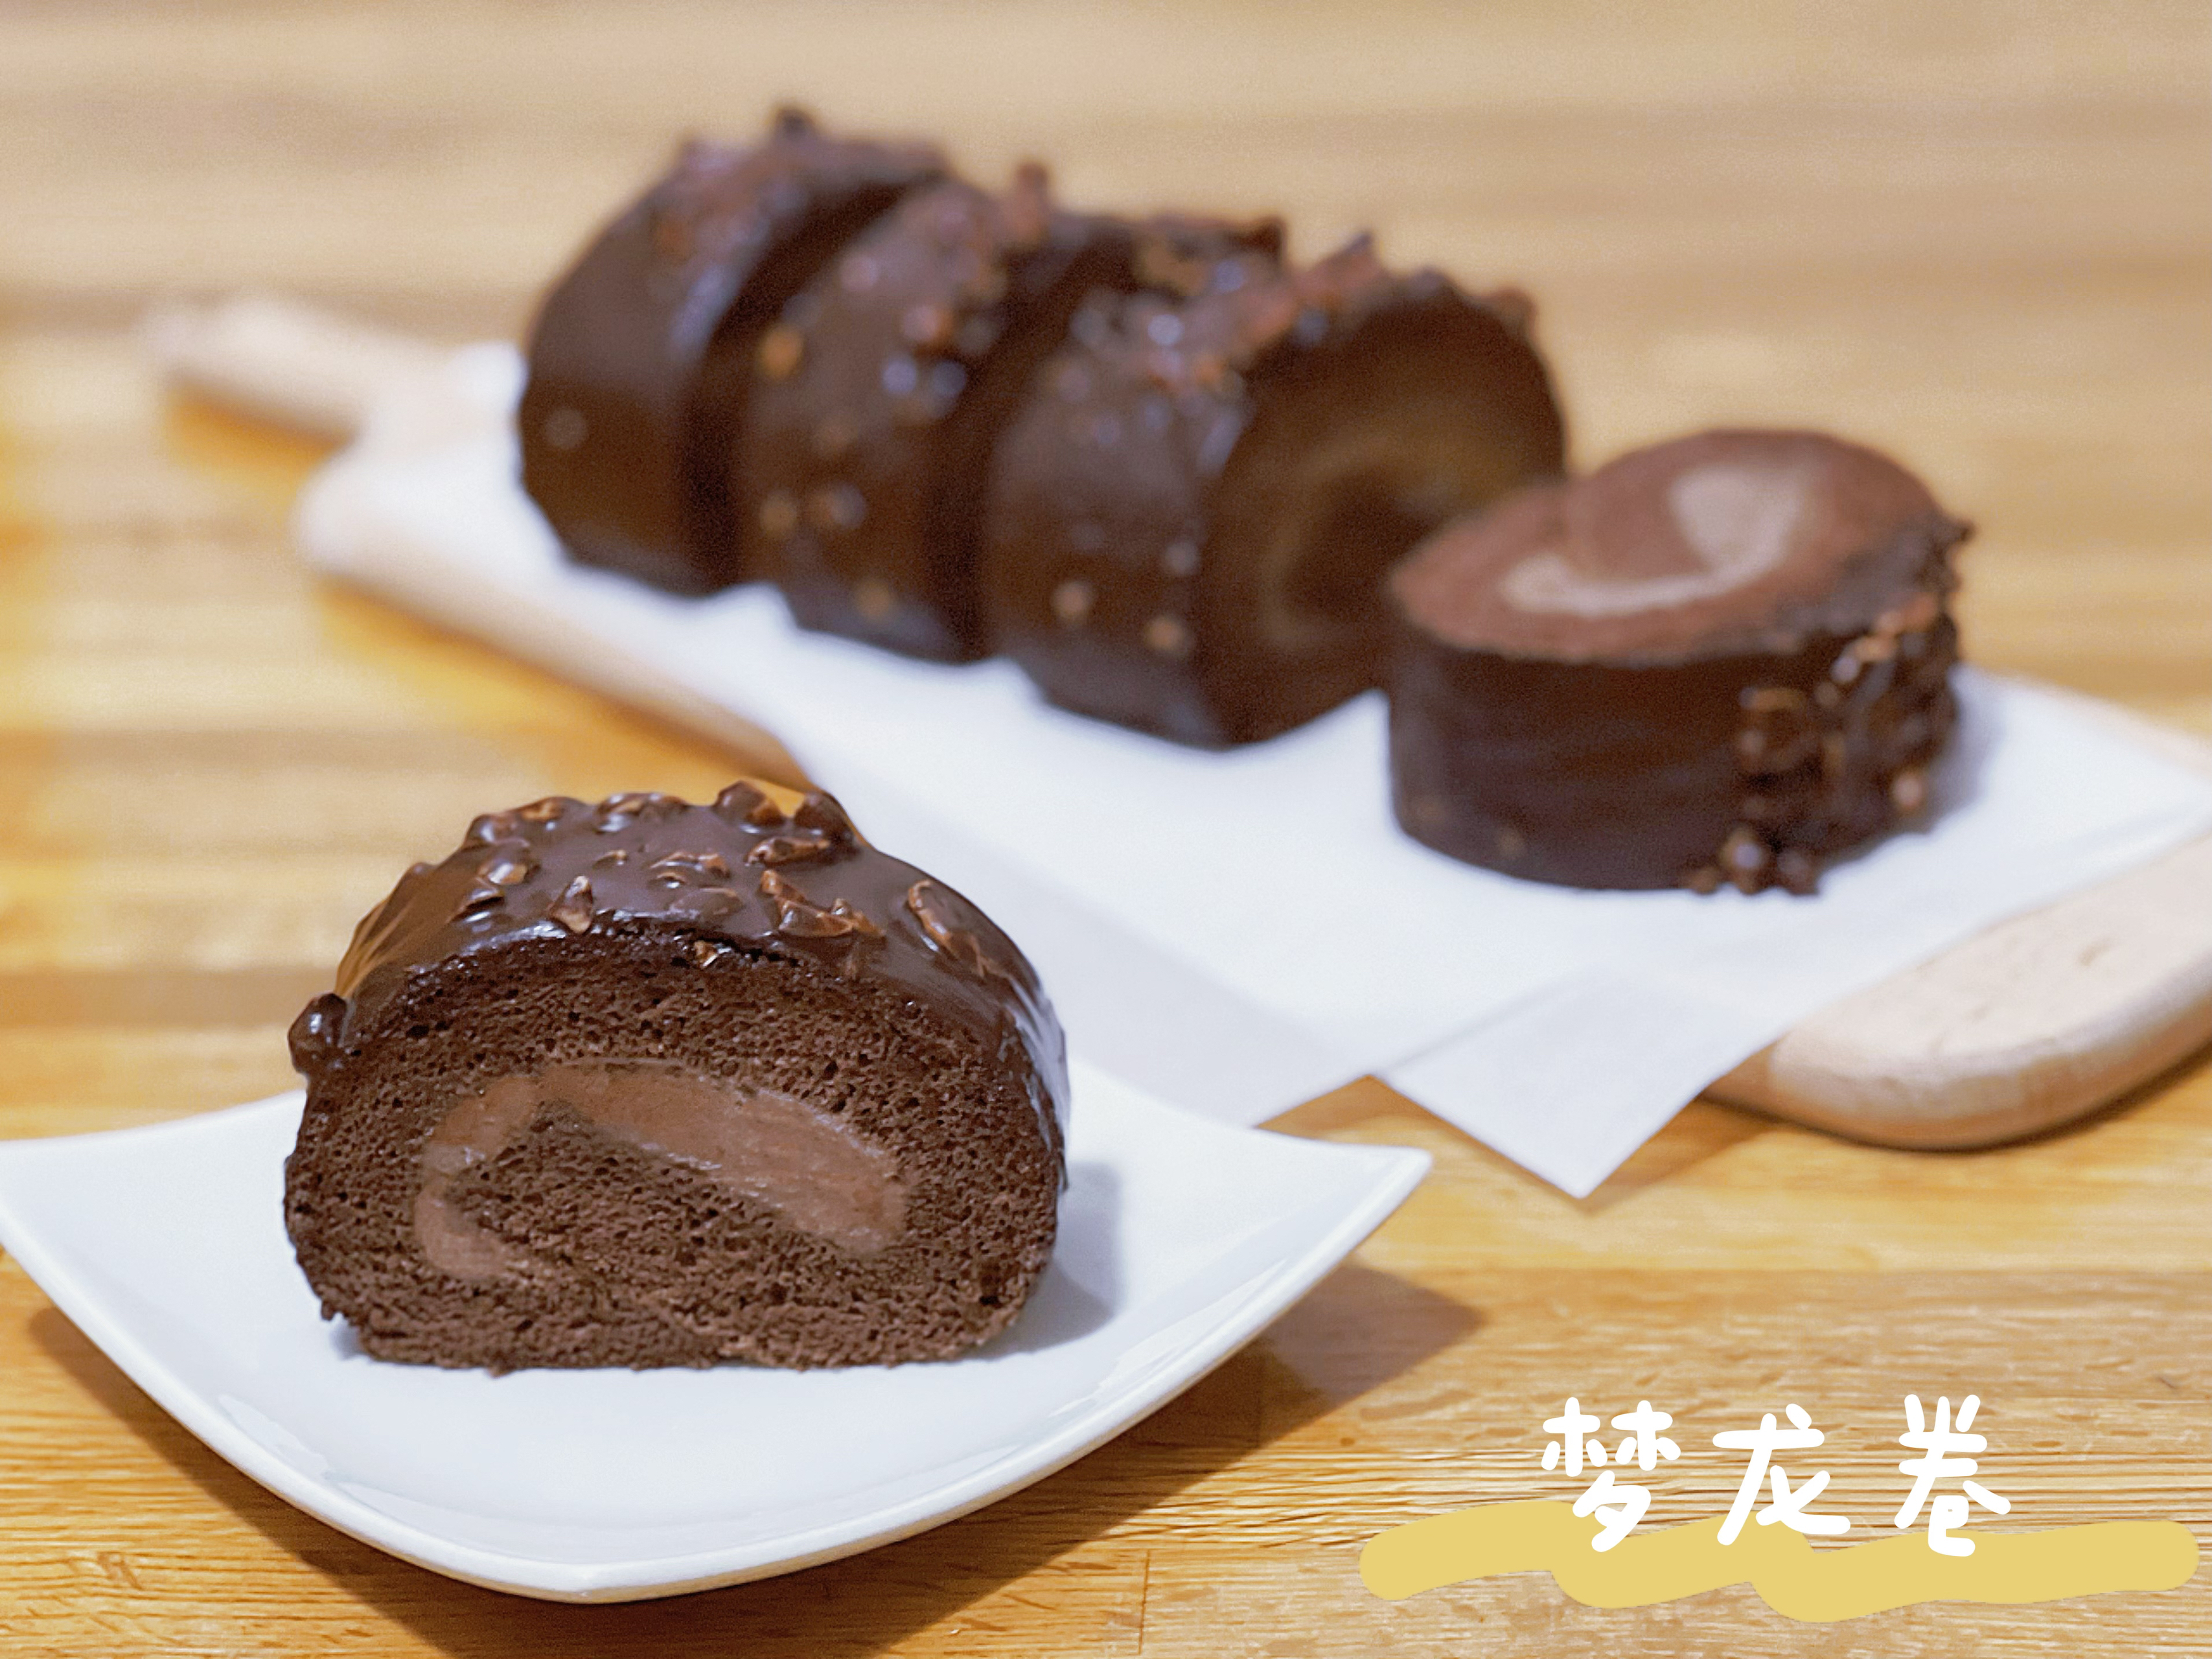 脆皮巧克力蛋糕卷【梦龙卷】